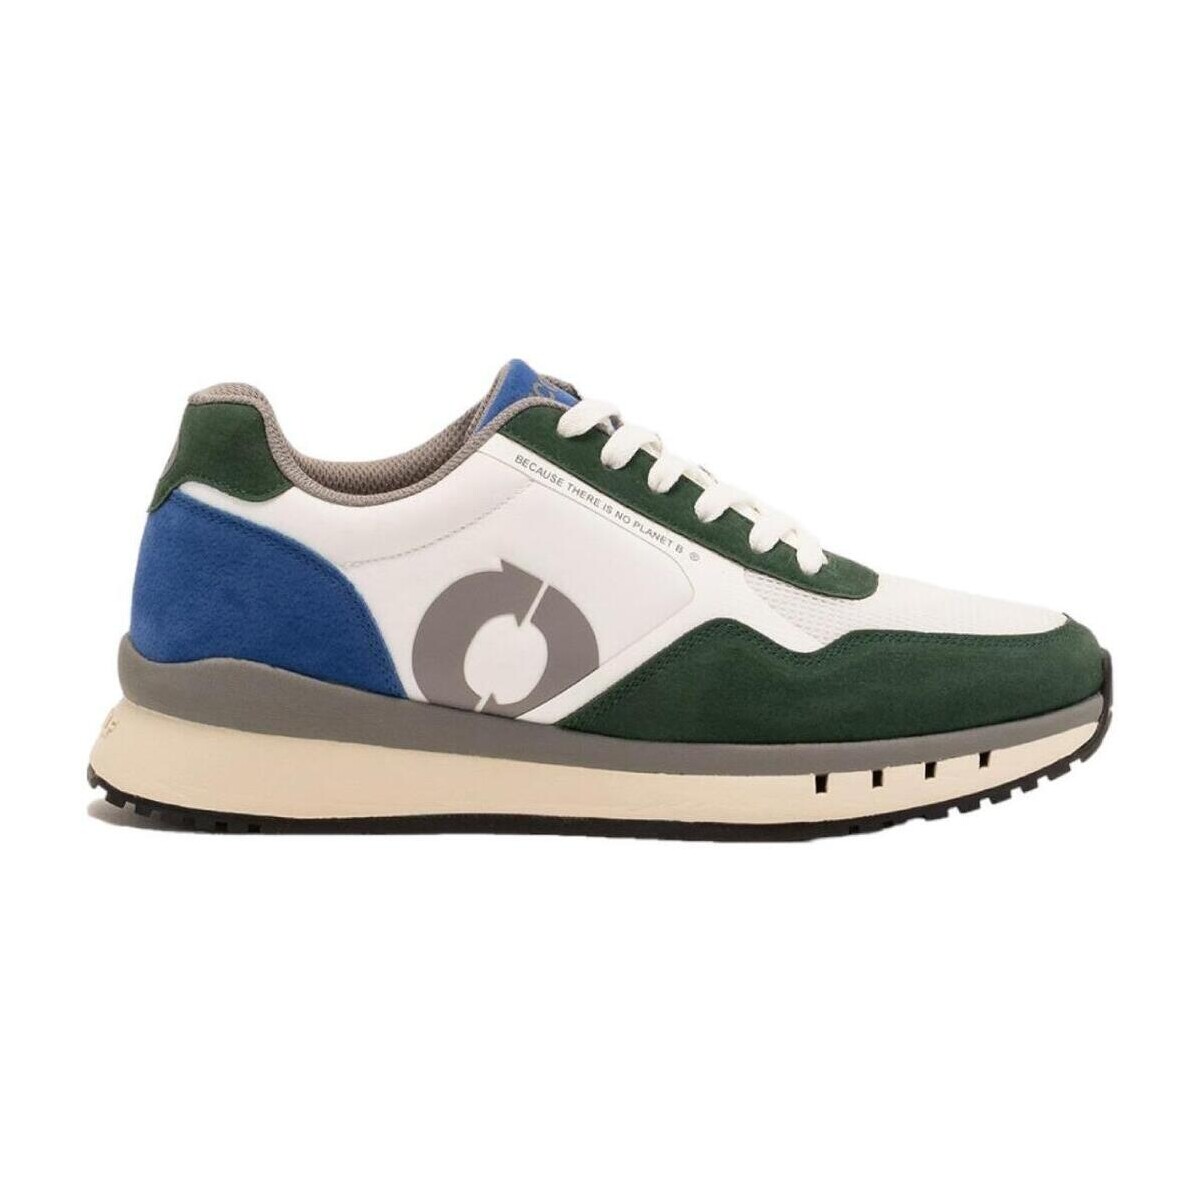 Schoenen Heren Lage sneakers Ecoalf  Multicolour